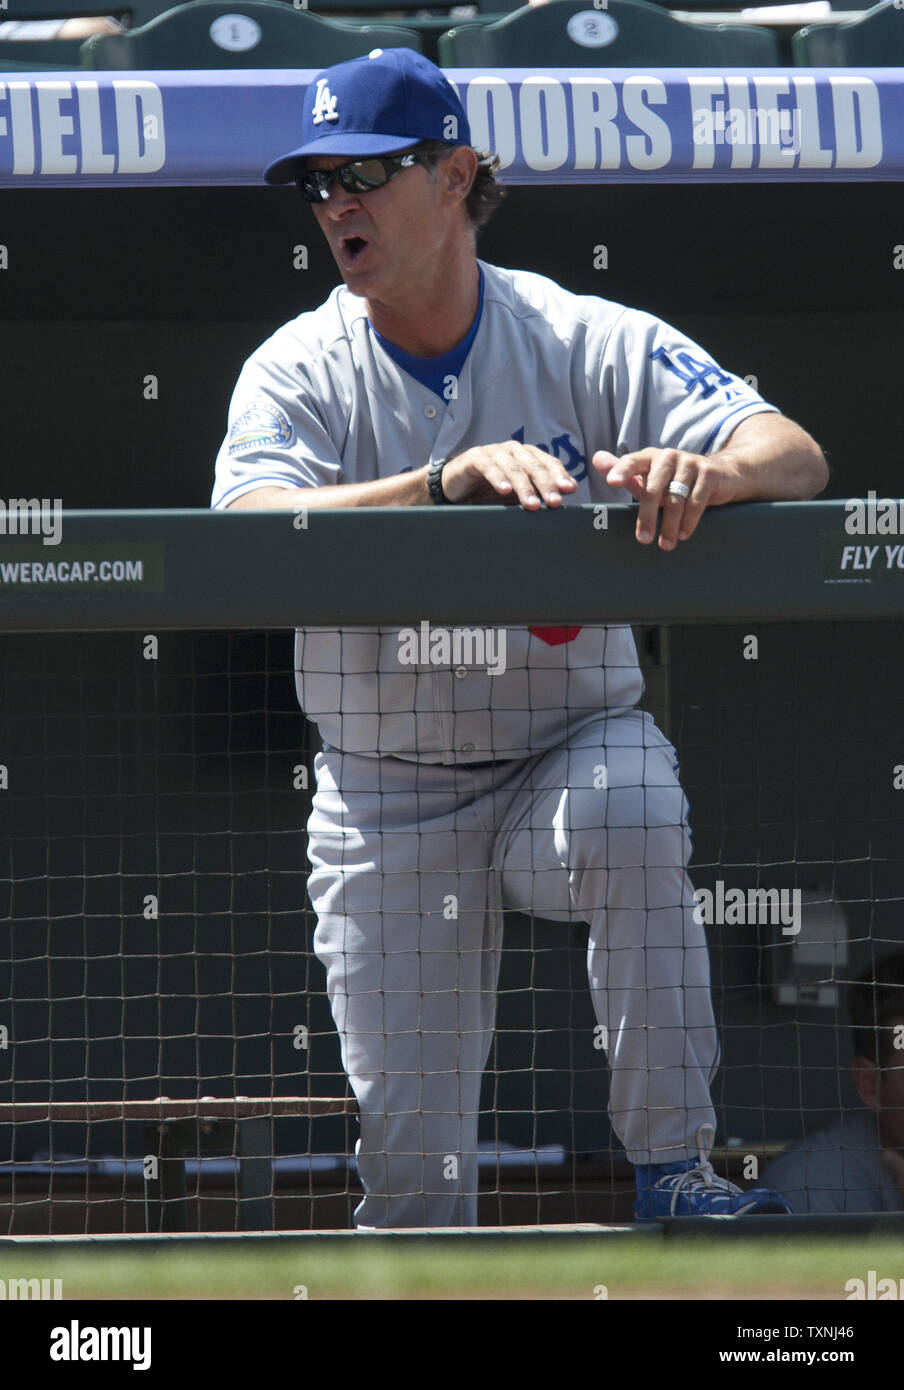 Los Angeles Dodgers manager Don Mattingly reagisce in sciopero chiamata fuori contro il secondo baseman Mark Ellis nel primo inning a Coors Field il 2 maggio 2012 a Denver. Il Dodgers sono legati per il miglior record nella Major con Texas a 17-7. UPI/Gary Caskey C. Foto Stock